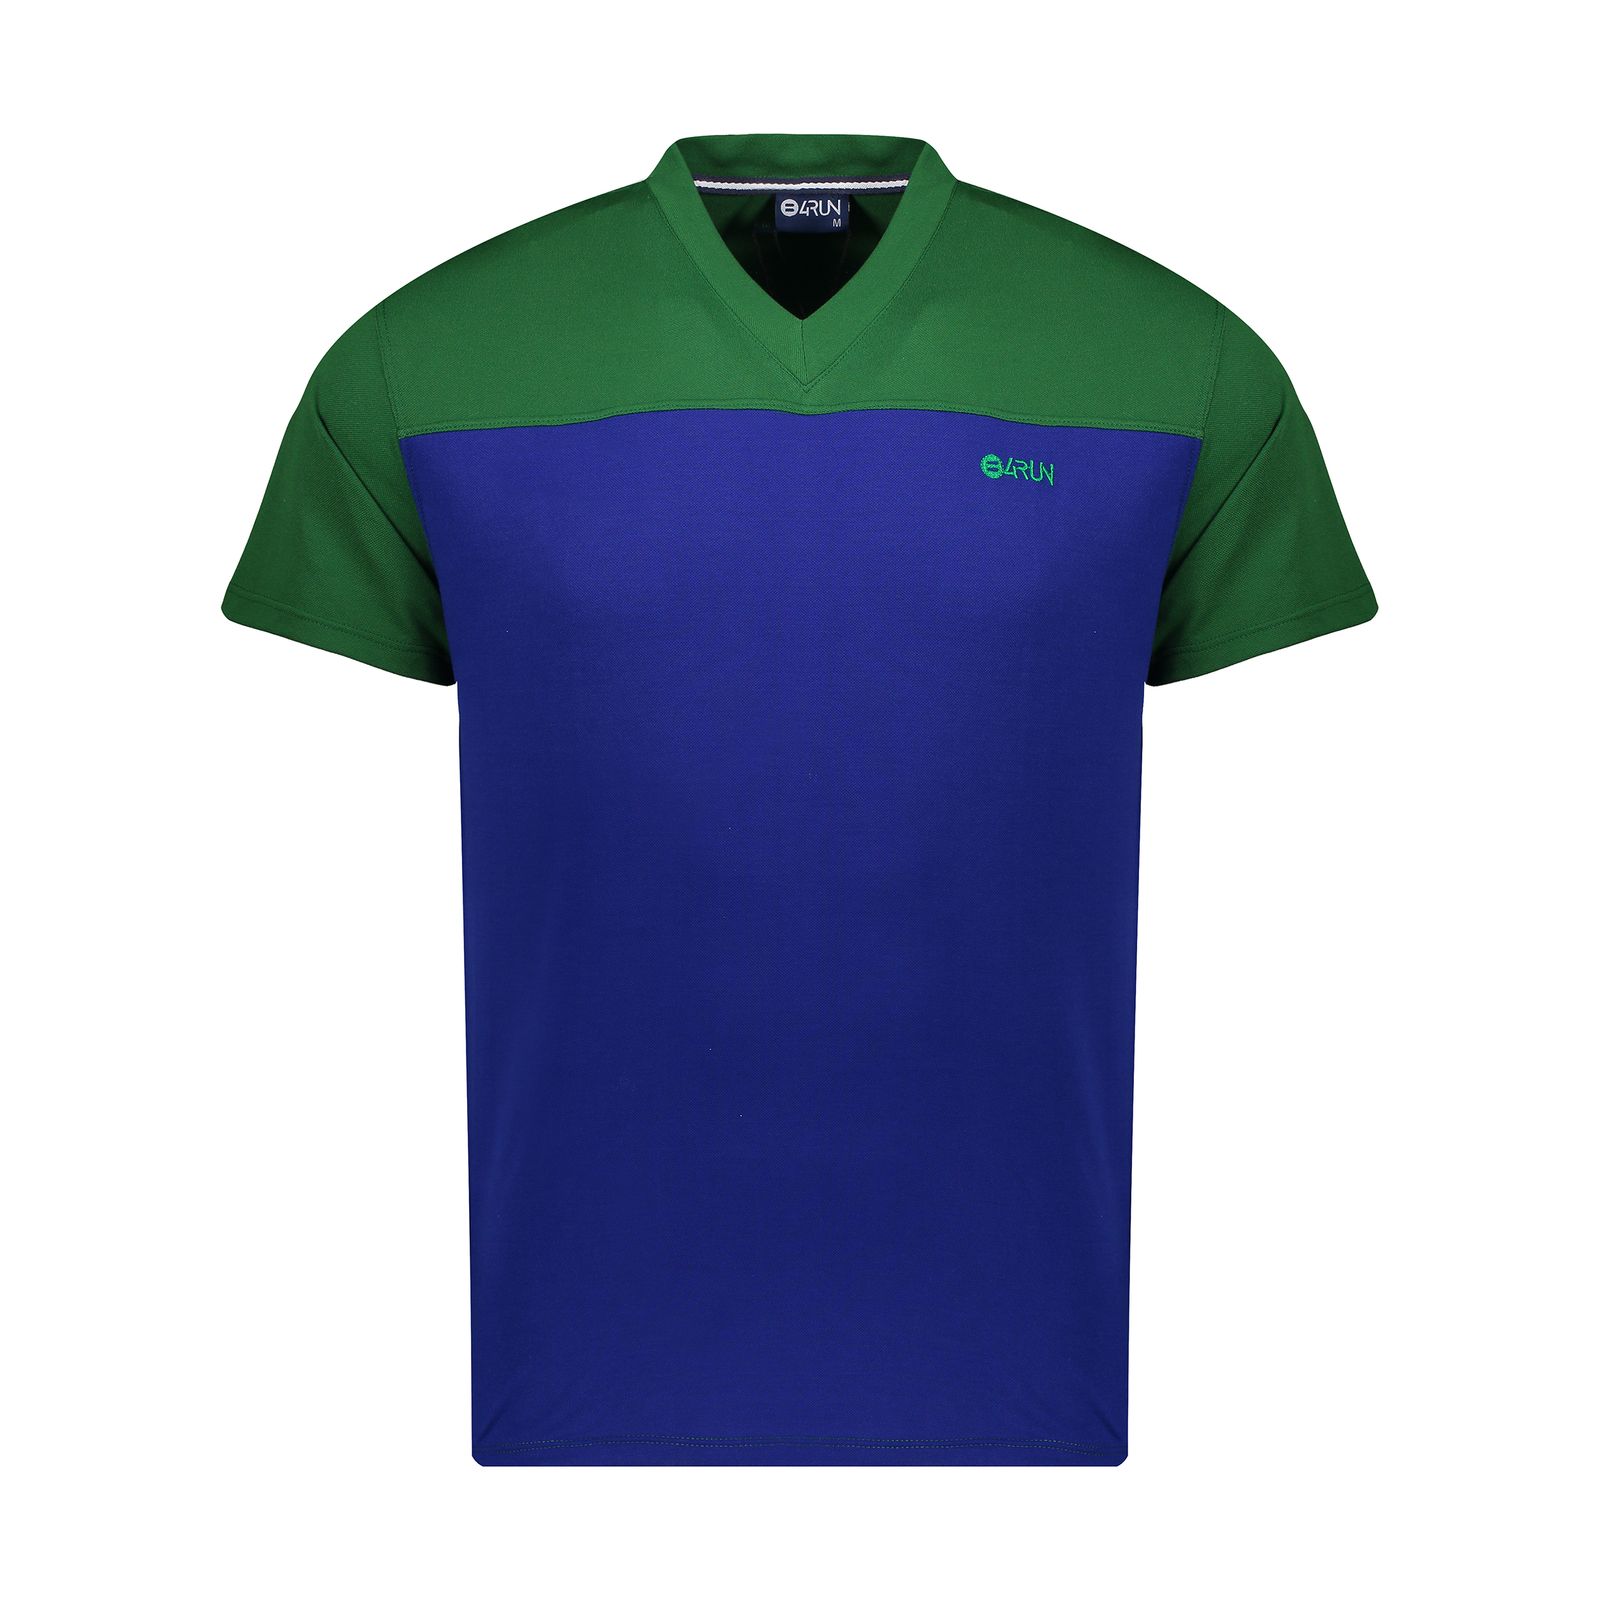 تی شرت ورزشی مردانه بی فور ران مدل 980317-4358 - سبز - آبی - 2